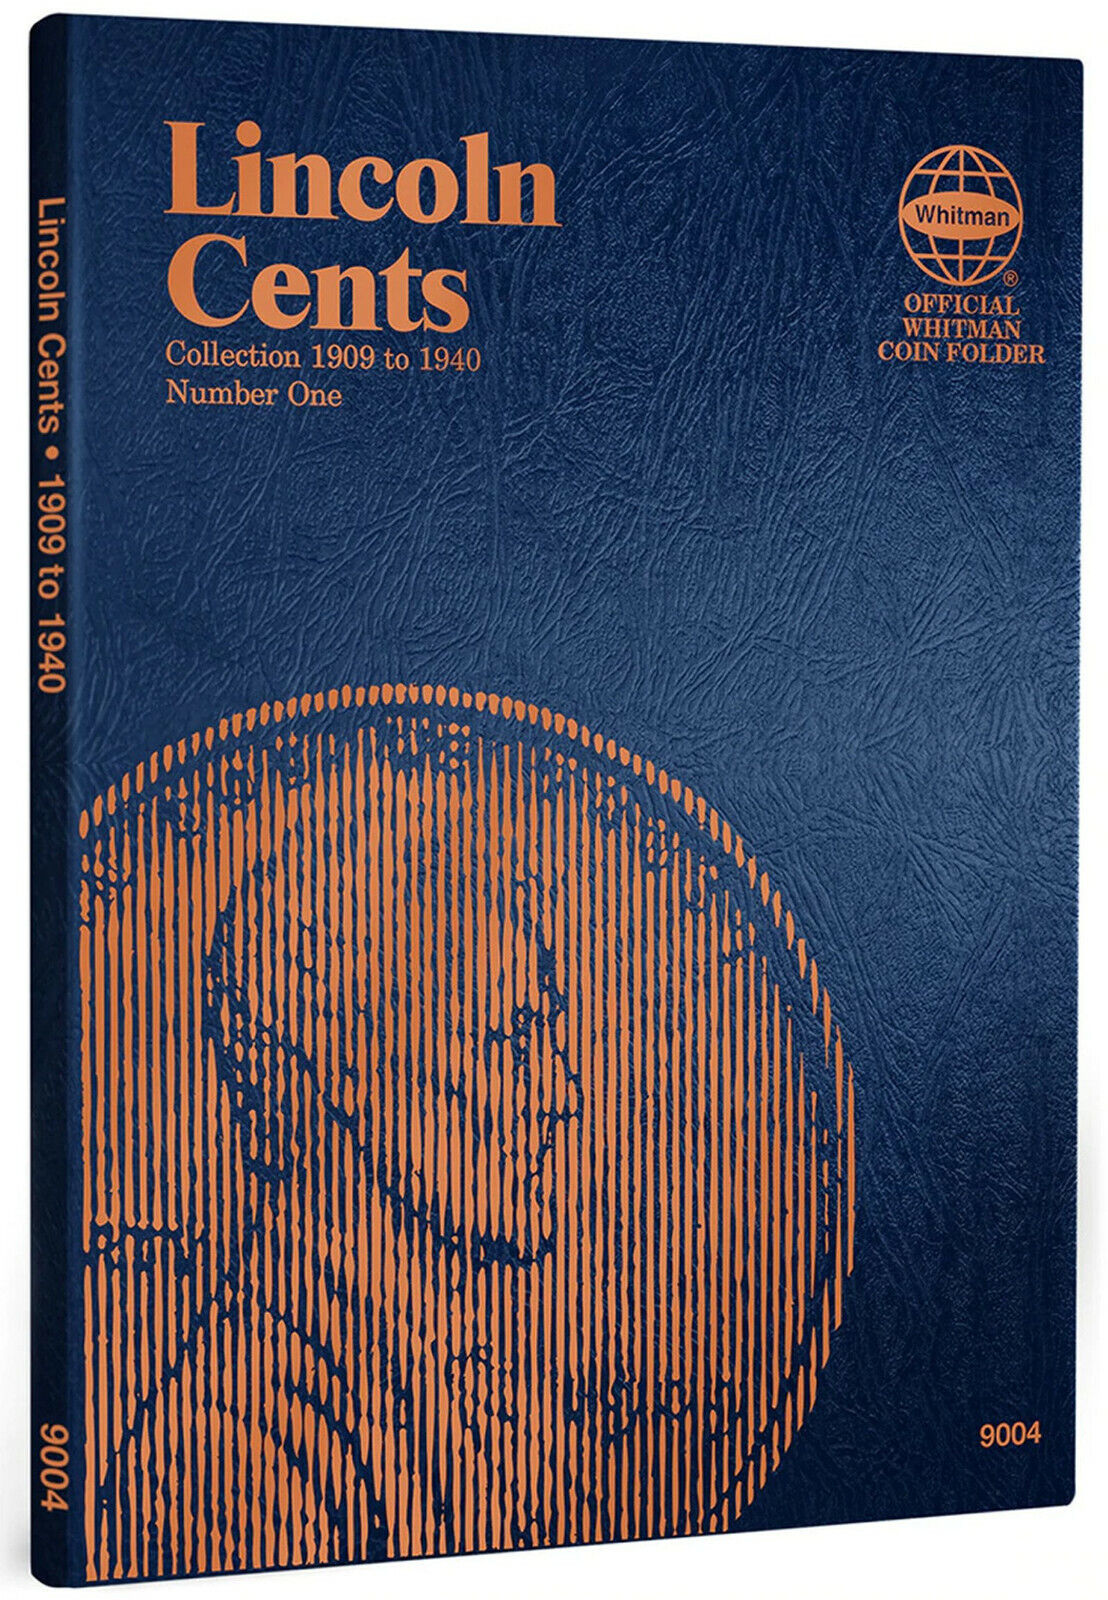 Whitman Coin Folder 9004 Lincoln Album Cent #1 福袋 1909-1940 Book 91%OFF